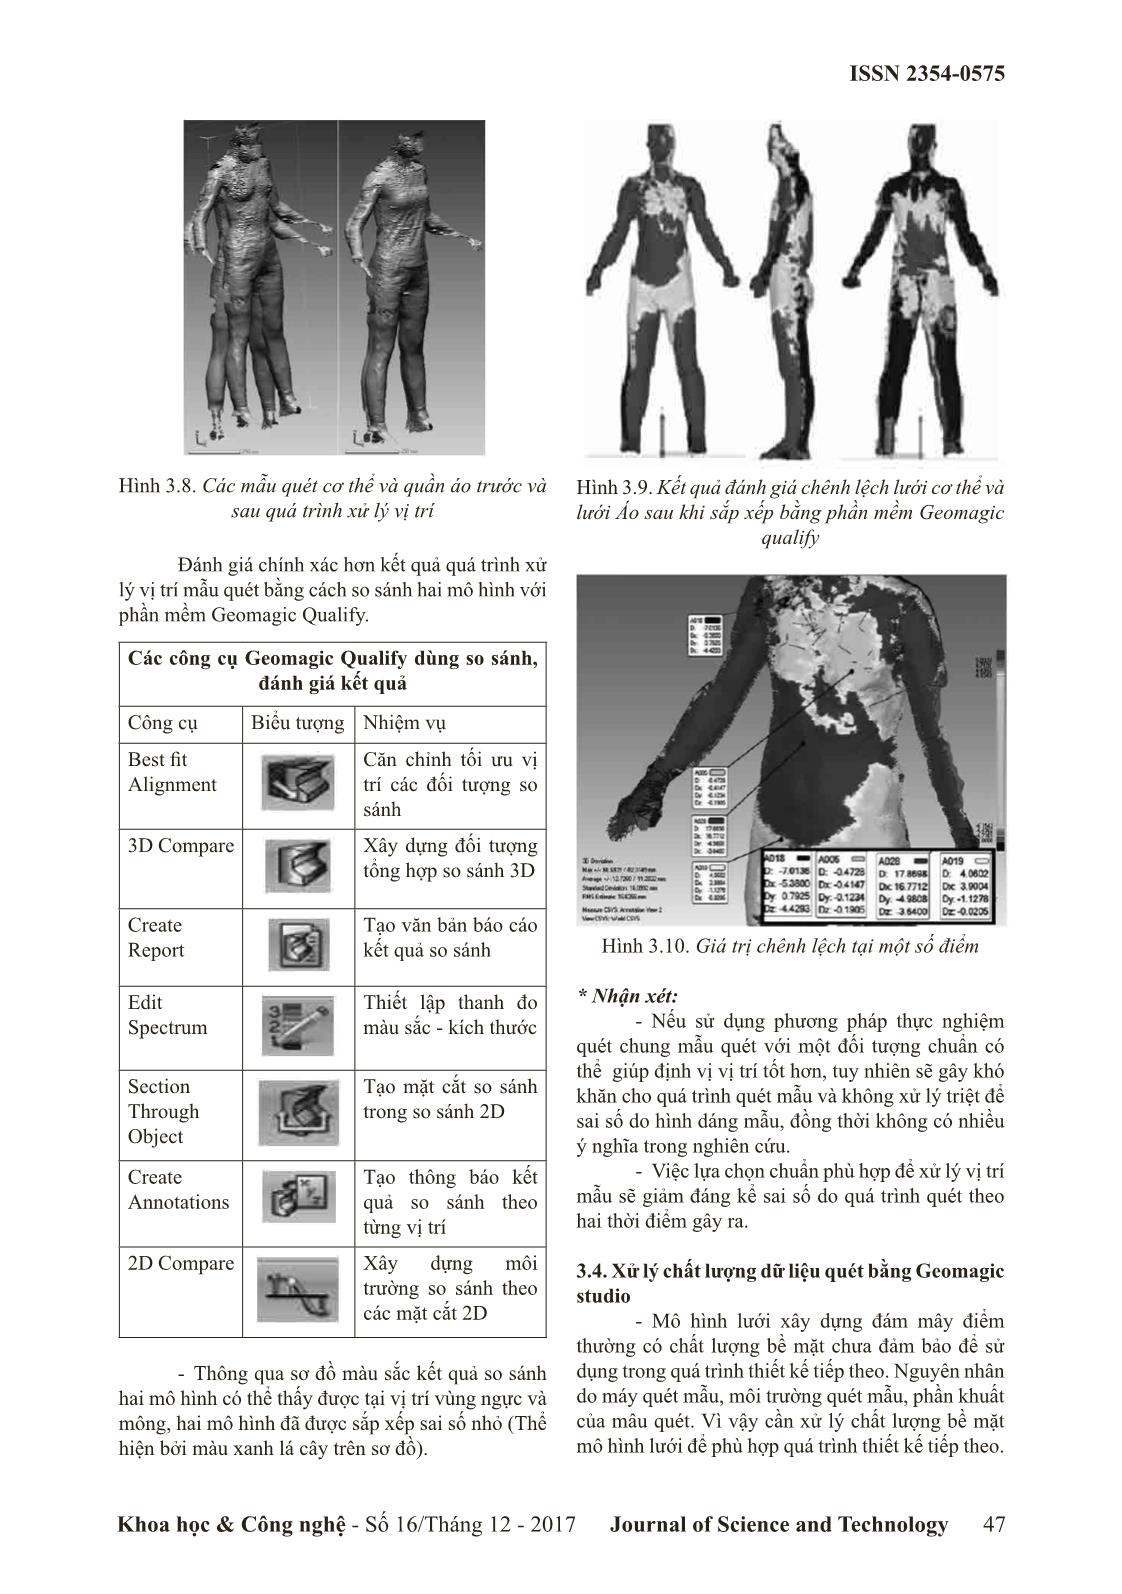 Xử lý dữ liệu quét mẫu cơ thể người phục vụ thiết kế quân áo 3 chiều trang 5